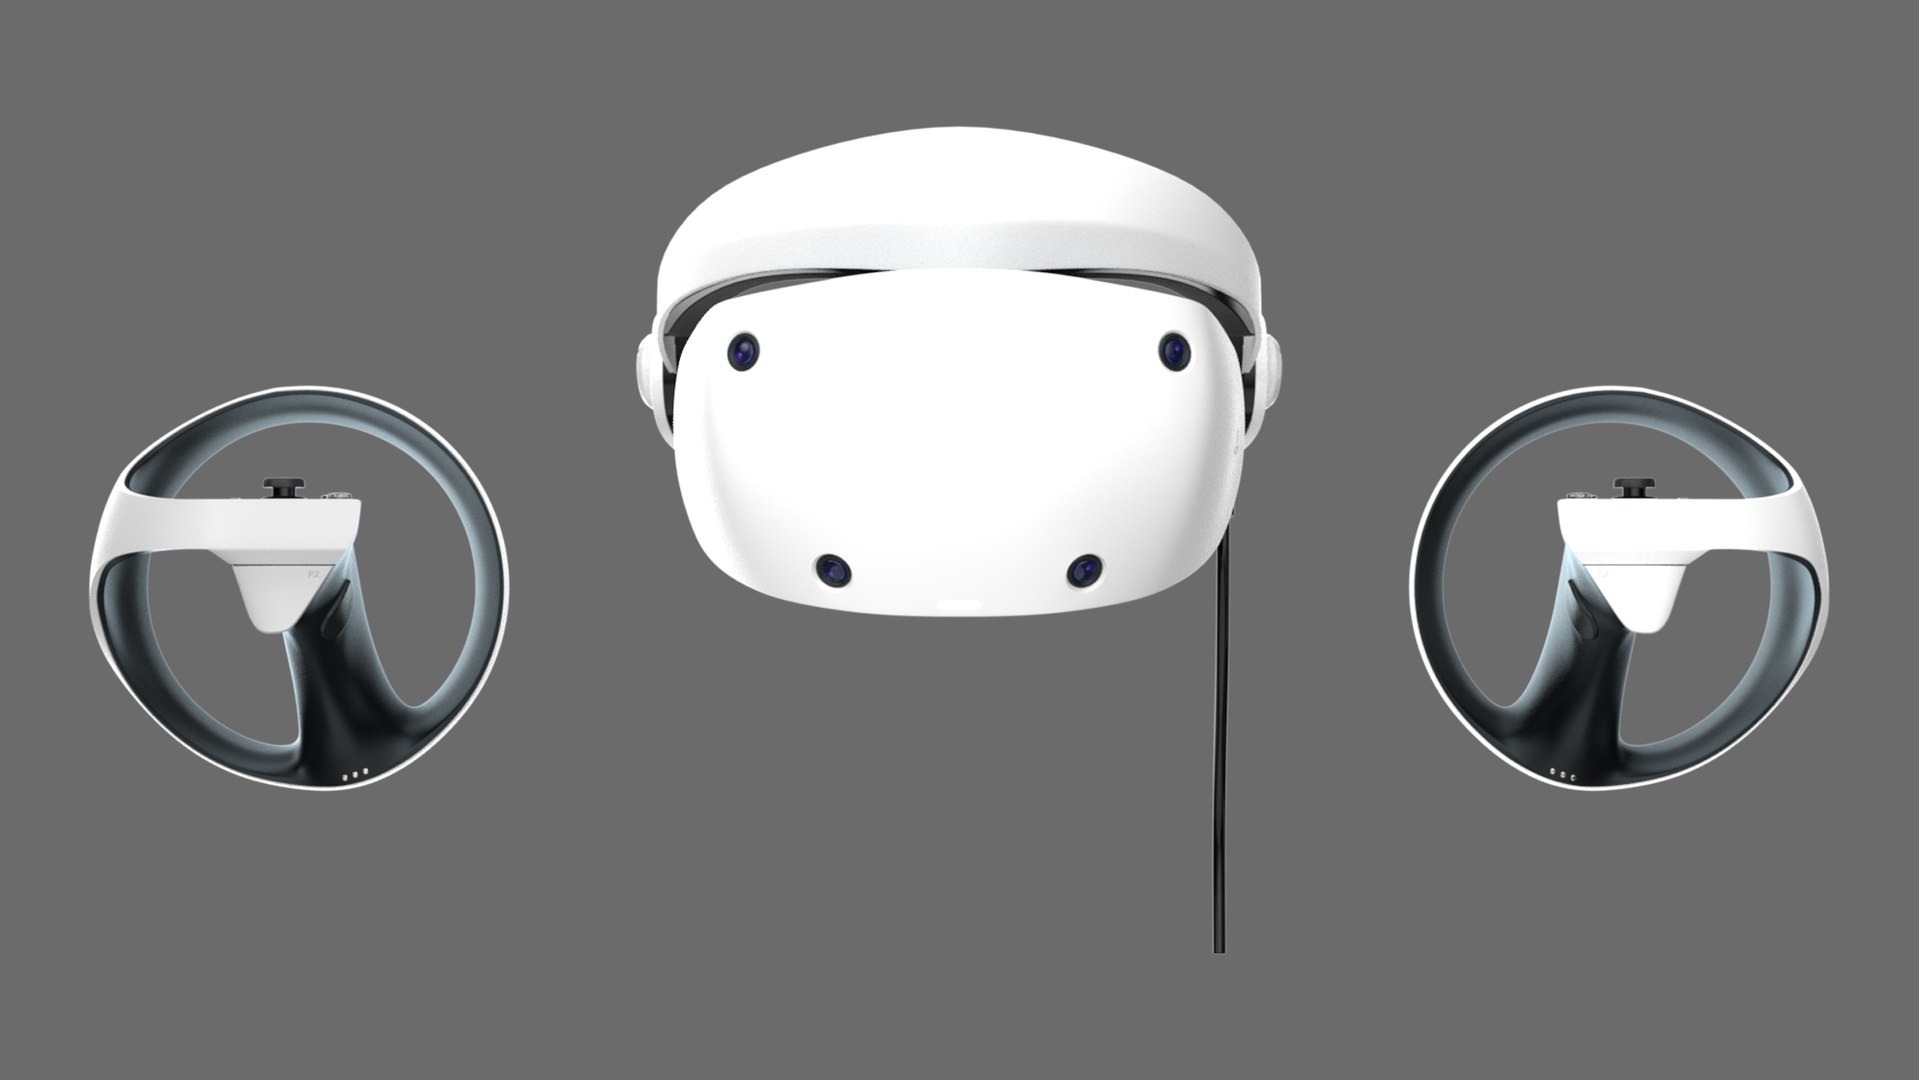 PSVR 2 PlayStation VR 2 Pro - Concept Design Trailer - VR4Player 